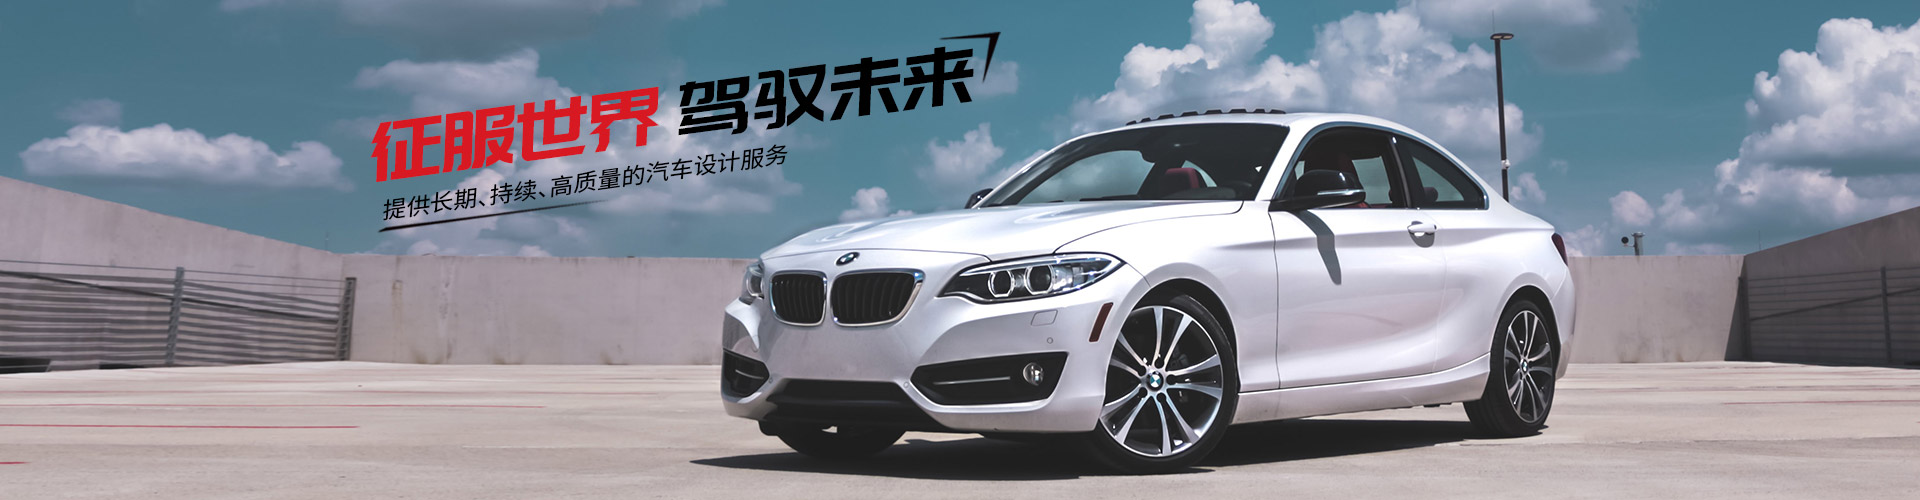 上海奧萊汽車銷售有限公司